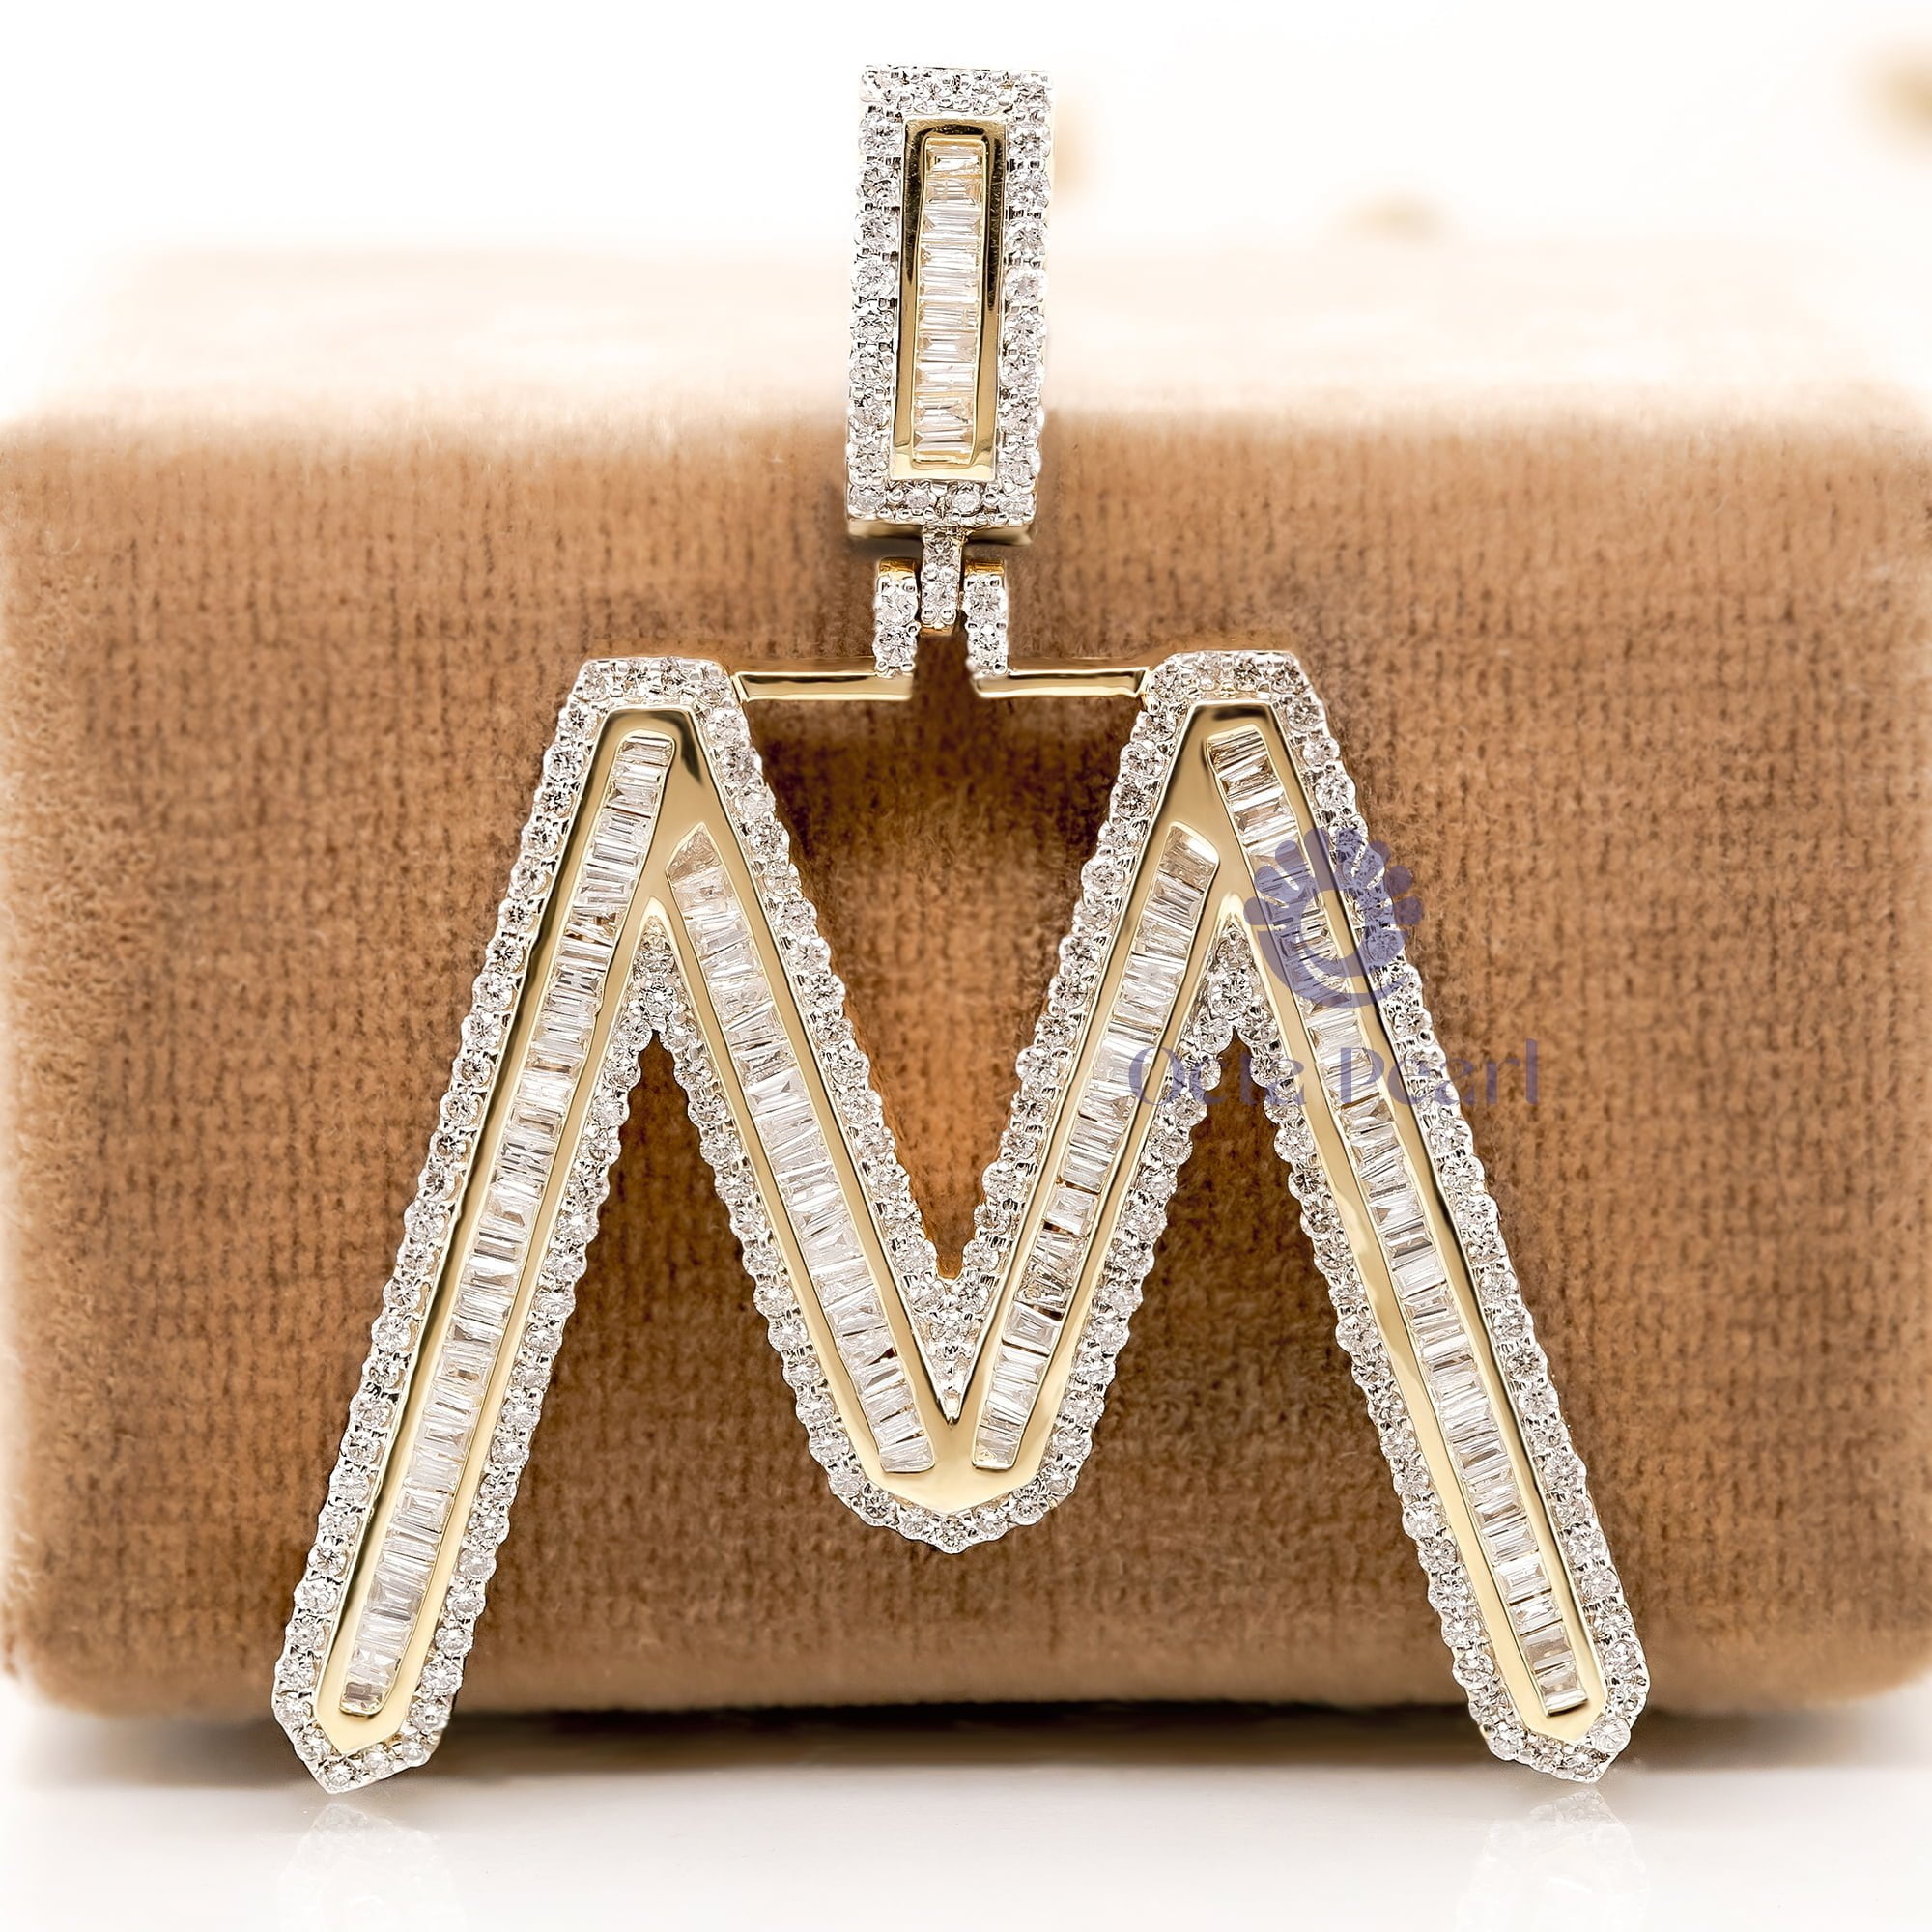 Men & Women's Initial 'M' Letter Alphabet Pendant In Baguette Or Round Cut CZ Stone